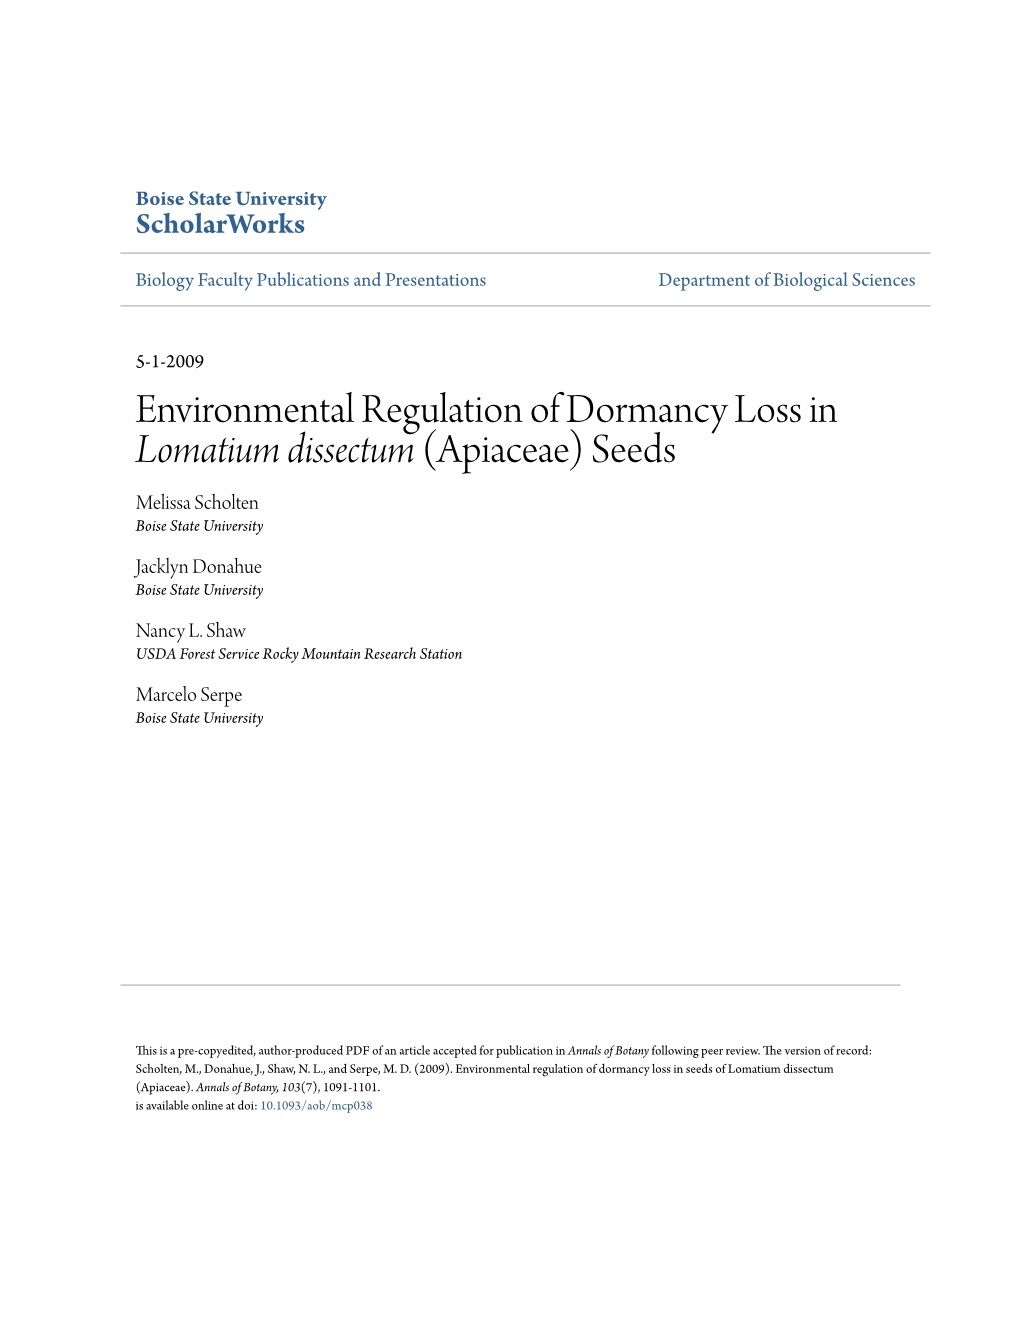 Environmental Regulation of Dormancy Loss in &lt;Em&gt;Lomatium